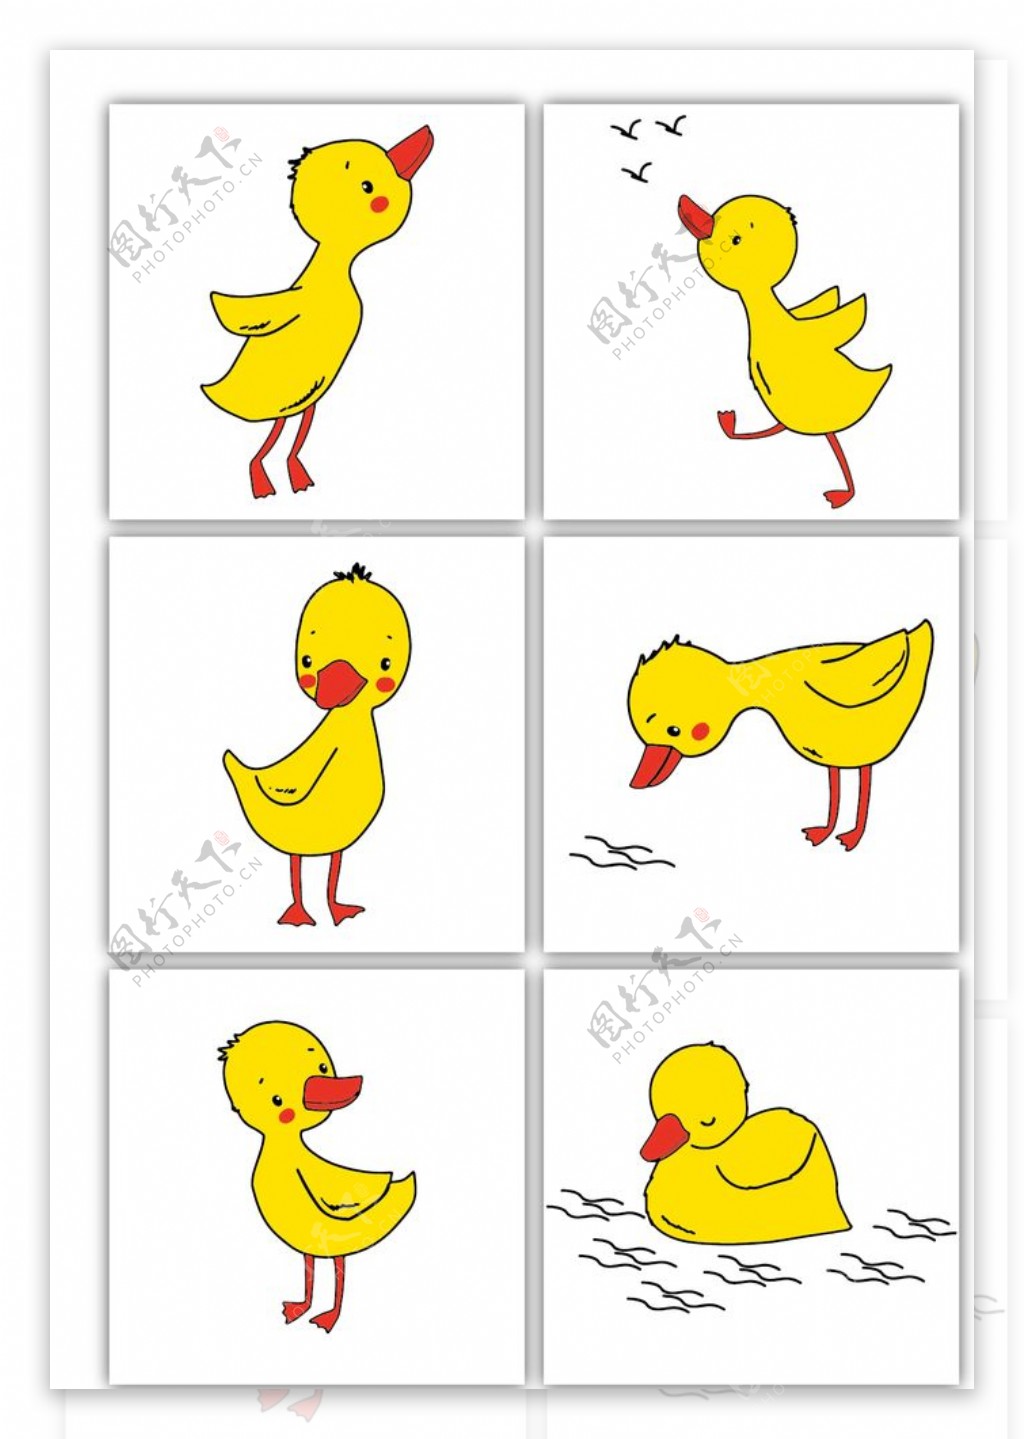 卡通手绘可爱小黄鸭图片